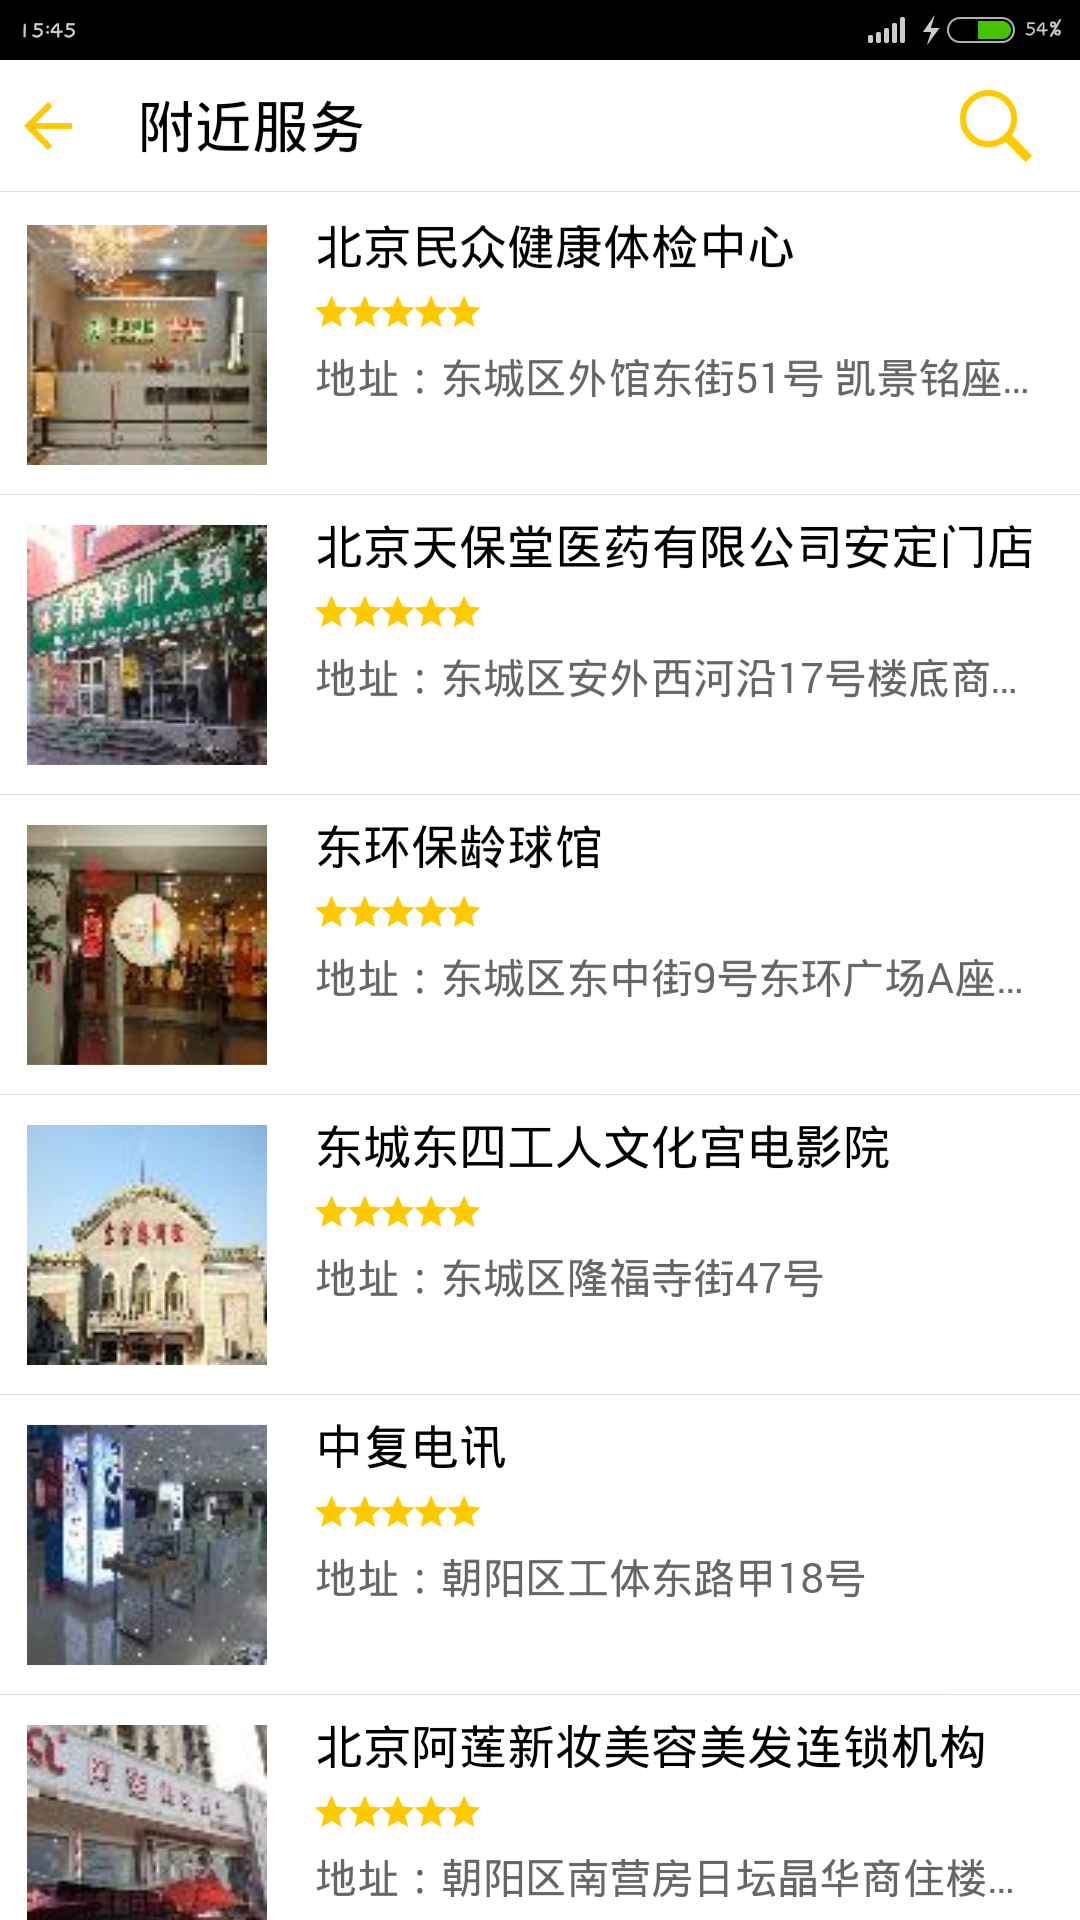 北京工会12351 iPhone版 v3.9.0 苹果越狱版3